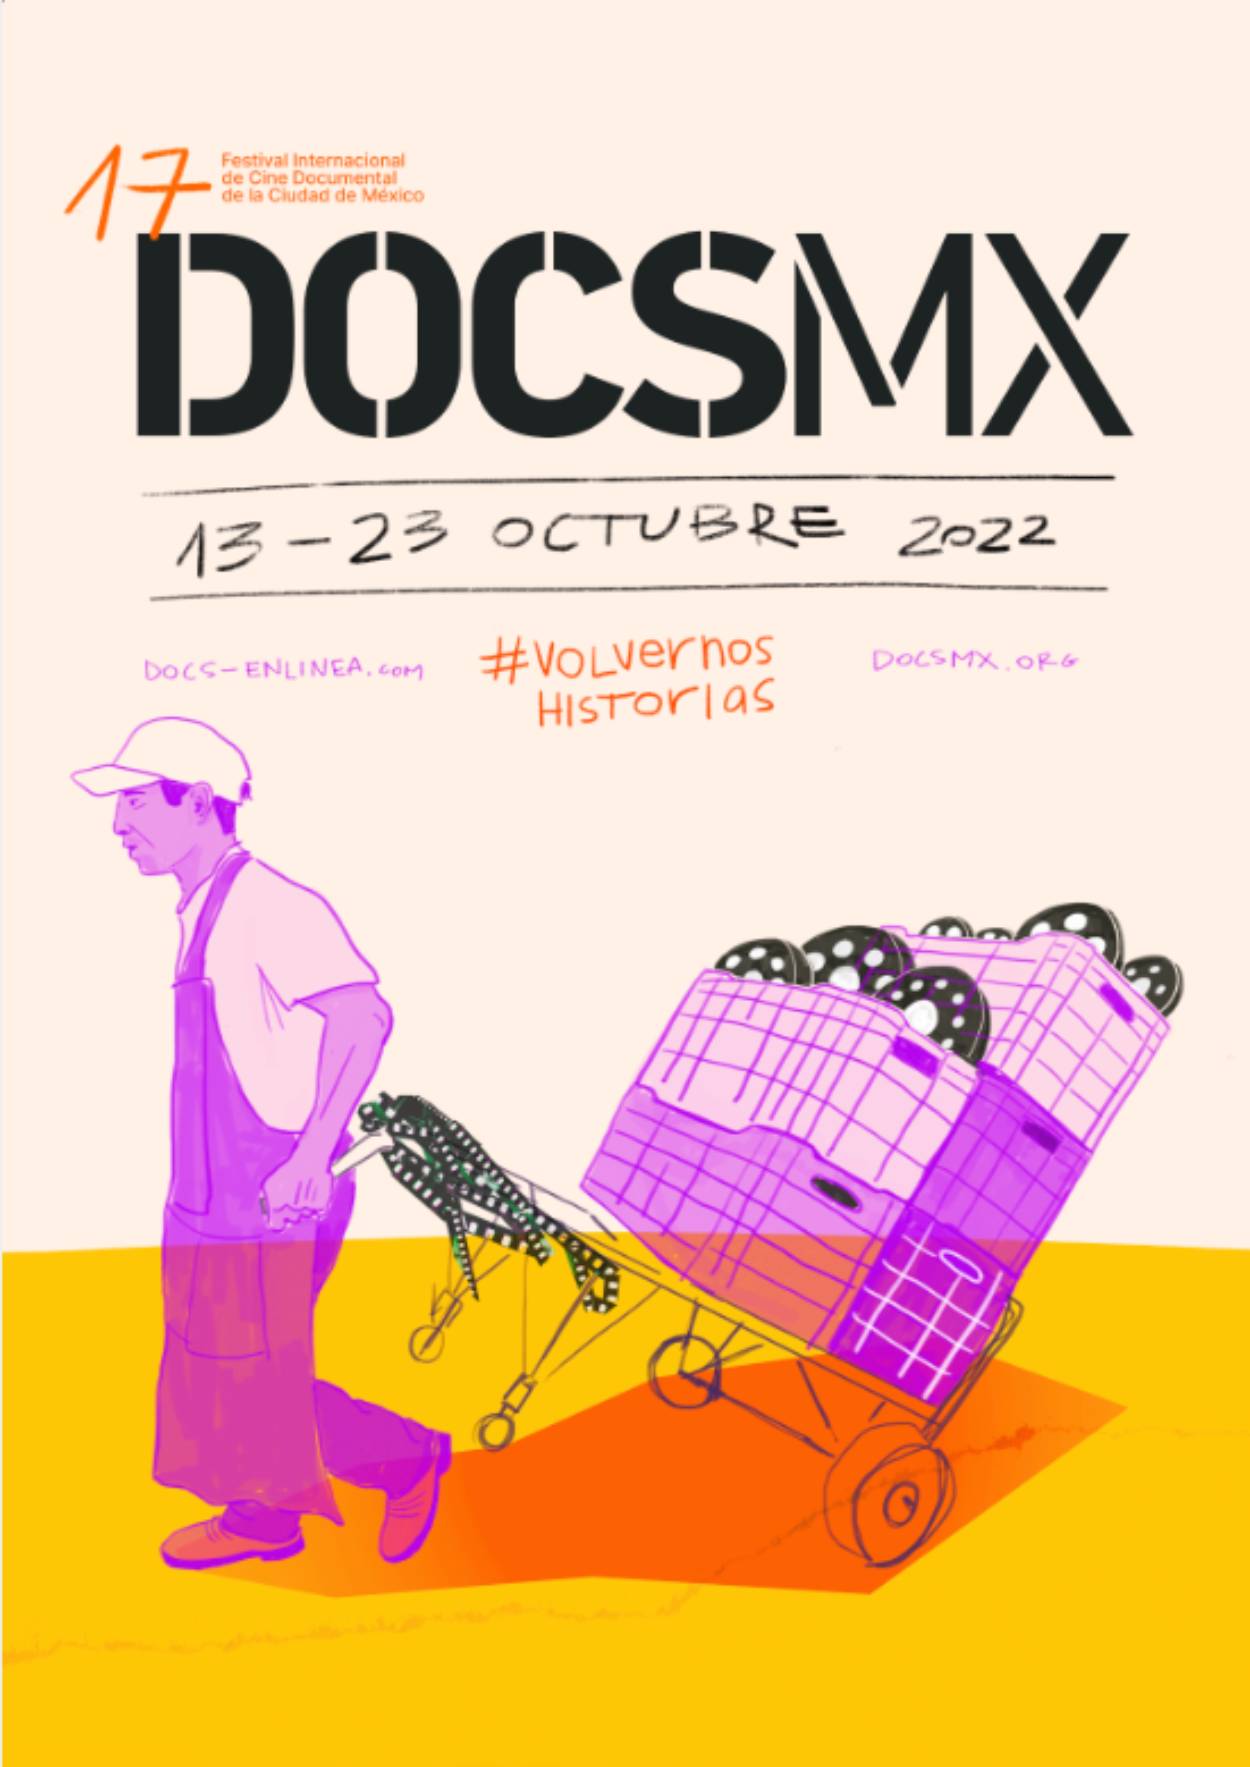 1985: Héroes entre ruinas formará parte de DOCS MX